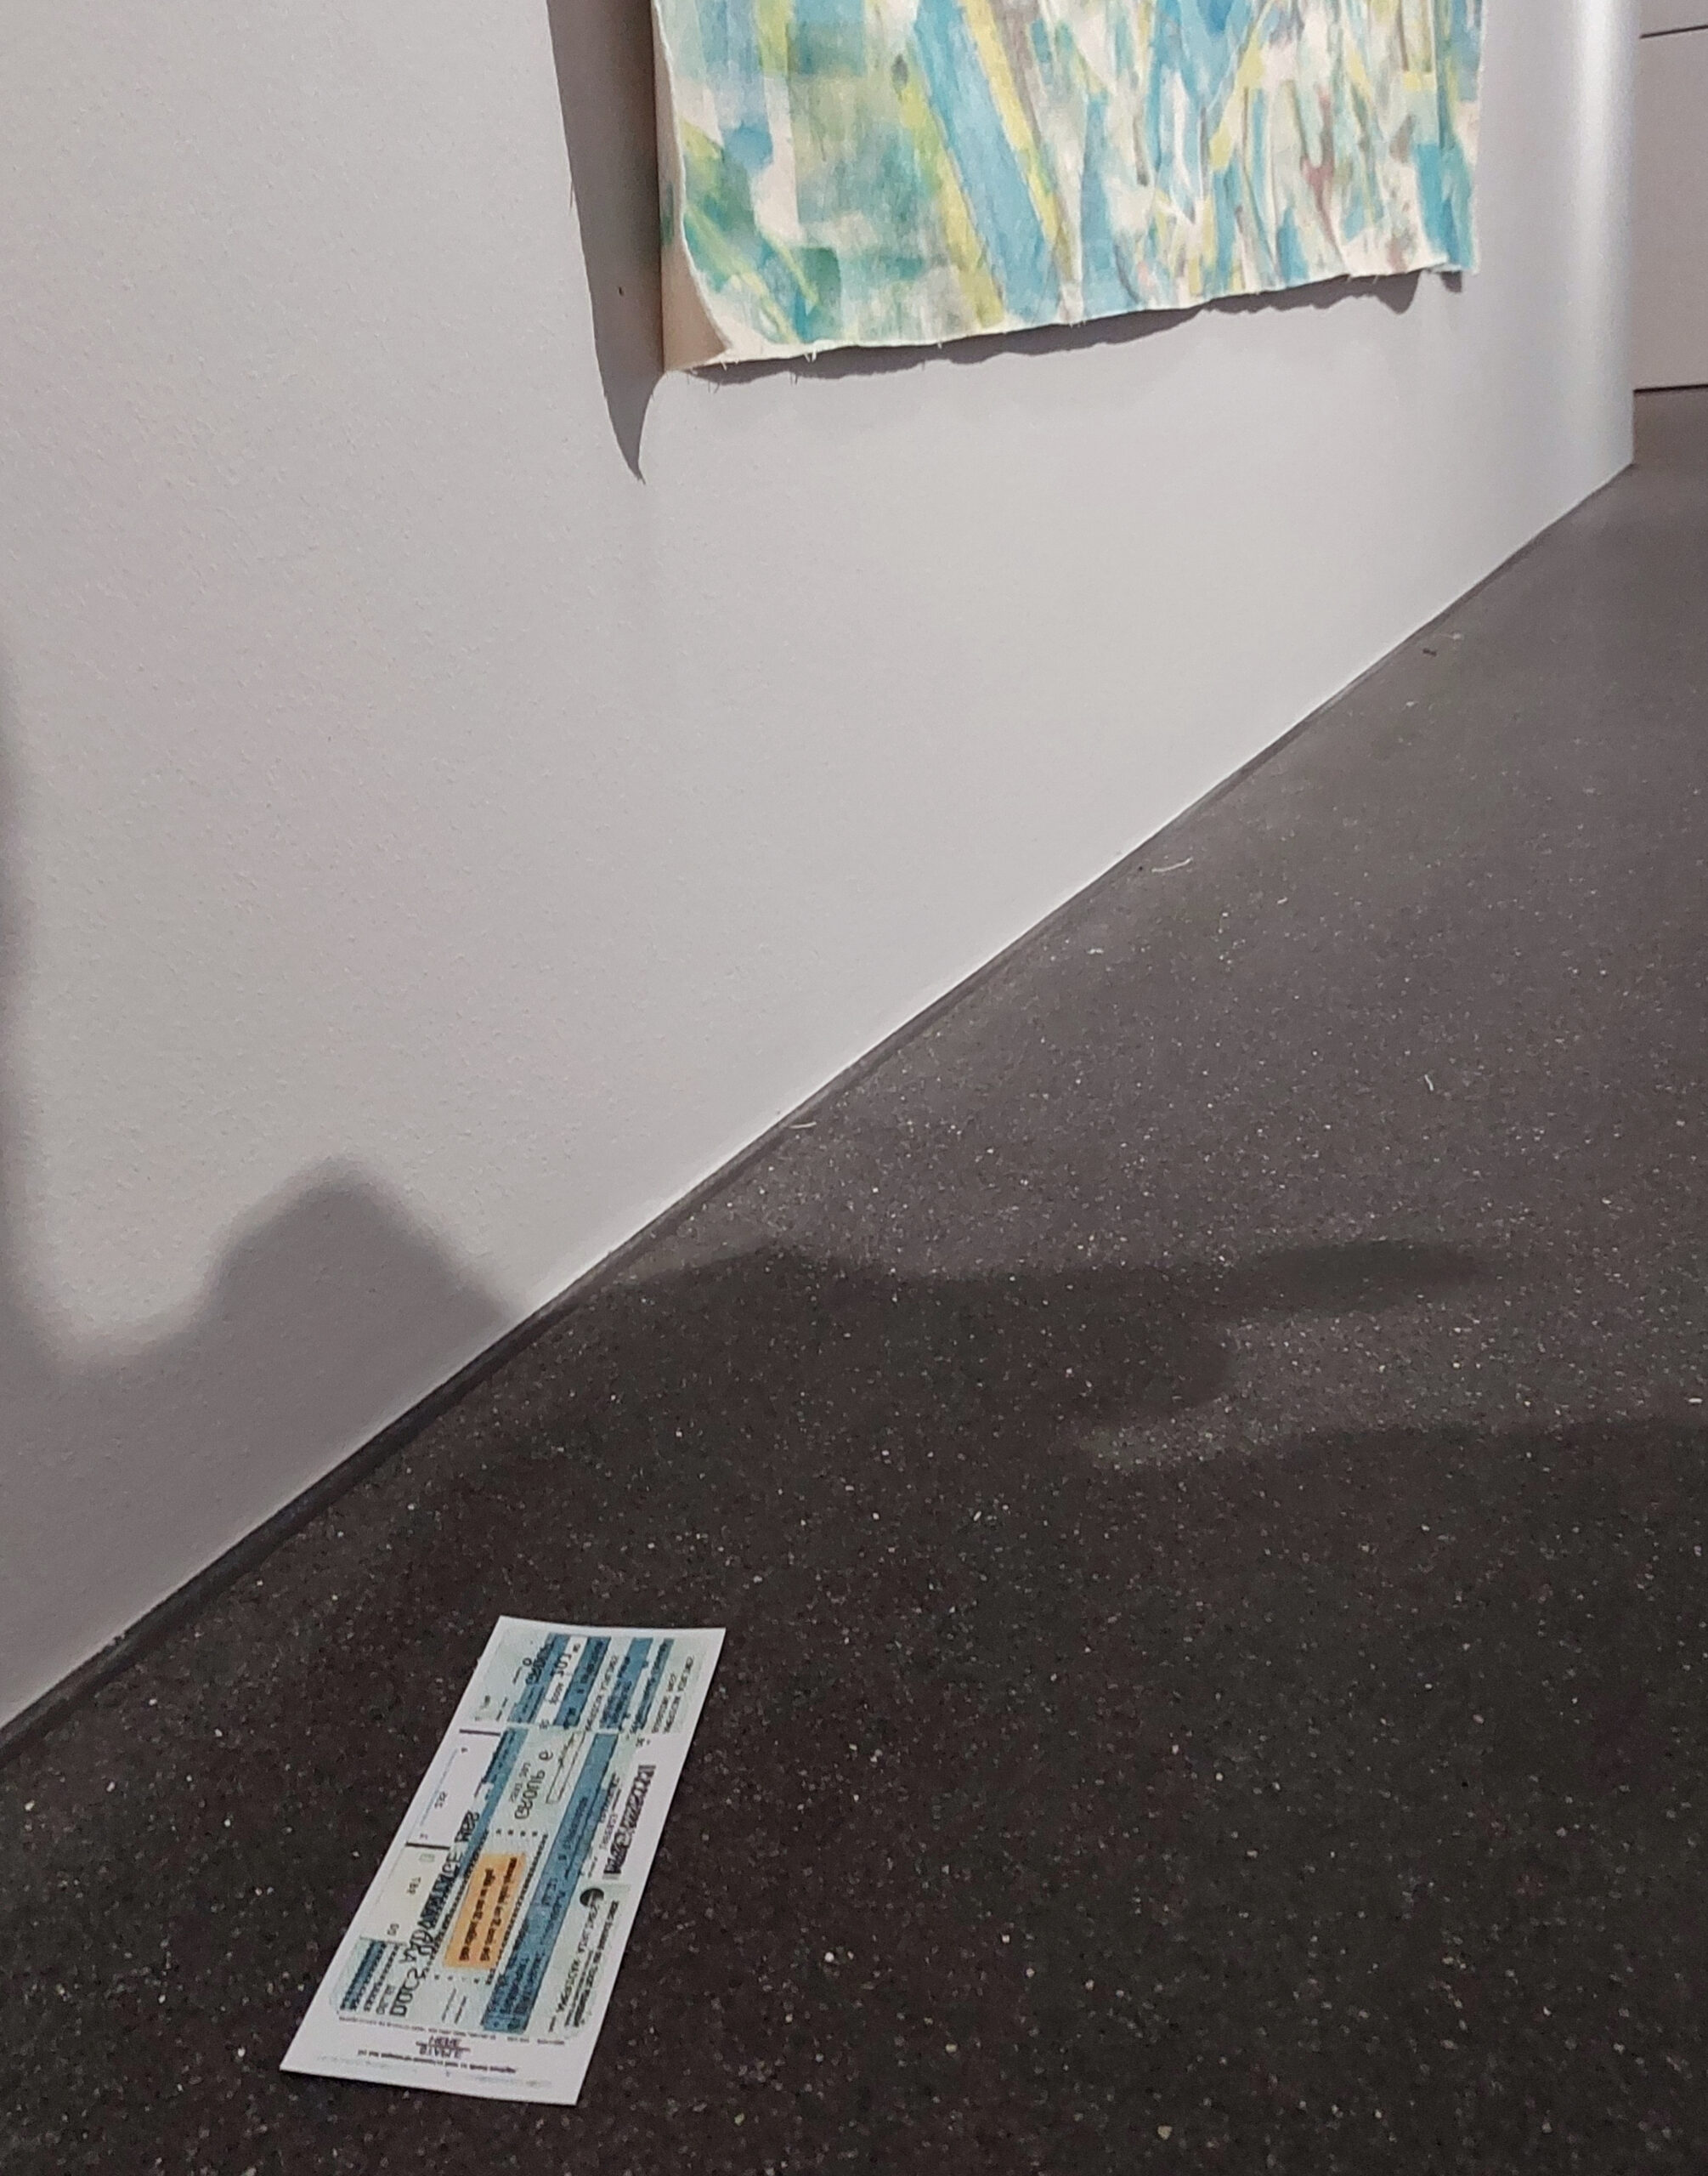 Exhibition view: "Verlorene Spuren".